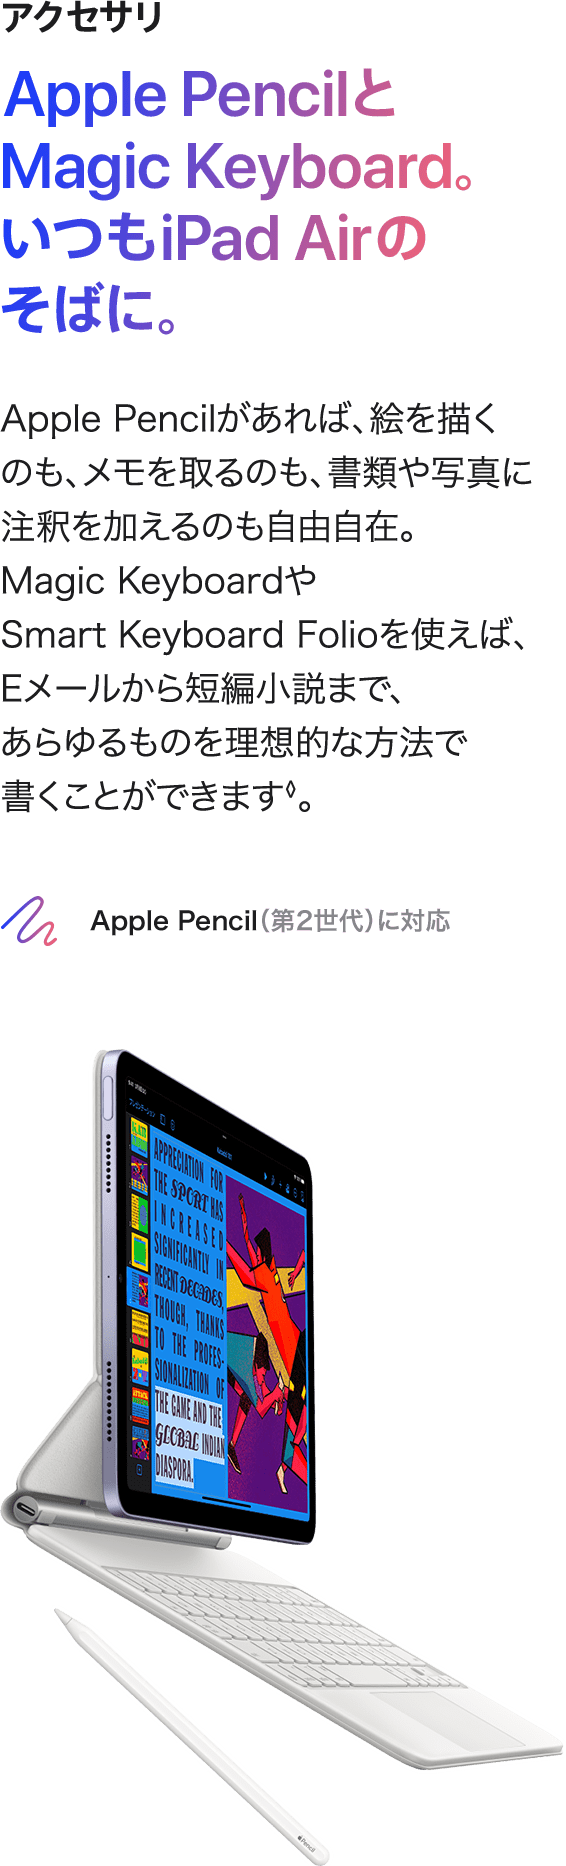 アクセサリ Apple Pencilと Magic Keyboard。 いつもiPad Airのそばに。 Apple Pencilがあれば、絵を描くのも、メモを取るのも、書類や写真に注釈を加えるのも自由自在。Magic KeyboardやSmart Keyboard Folioを使えば、Eメールから短編小説まで、あらゆるものを理想的な方法で  書くことができます◊。